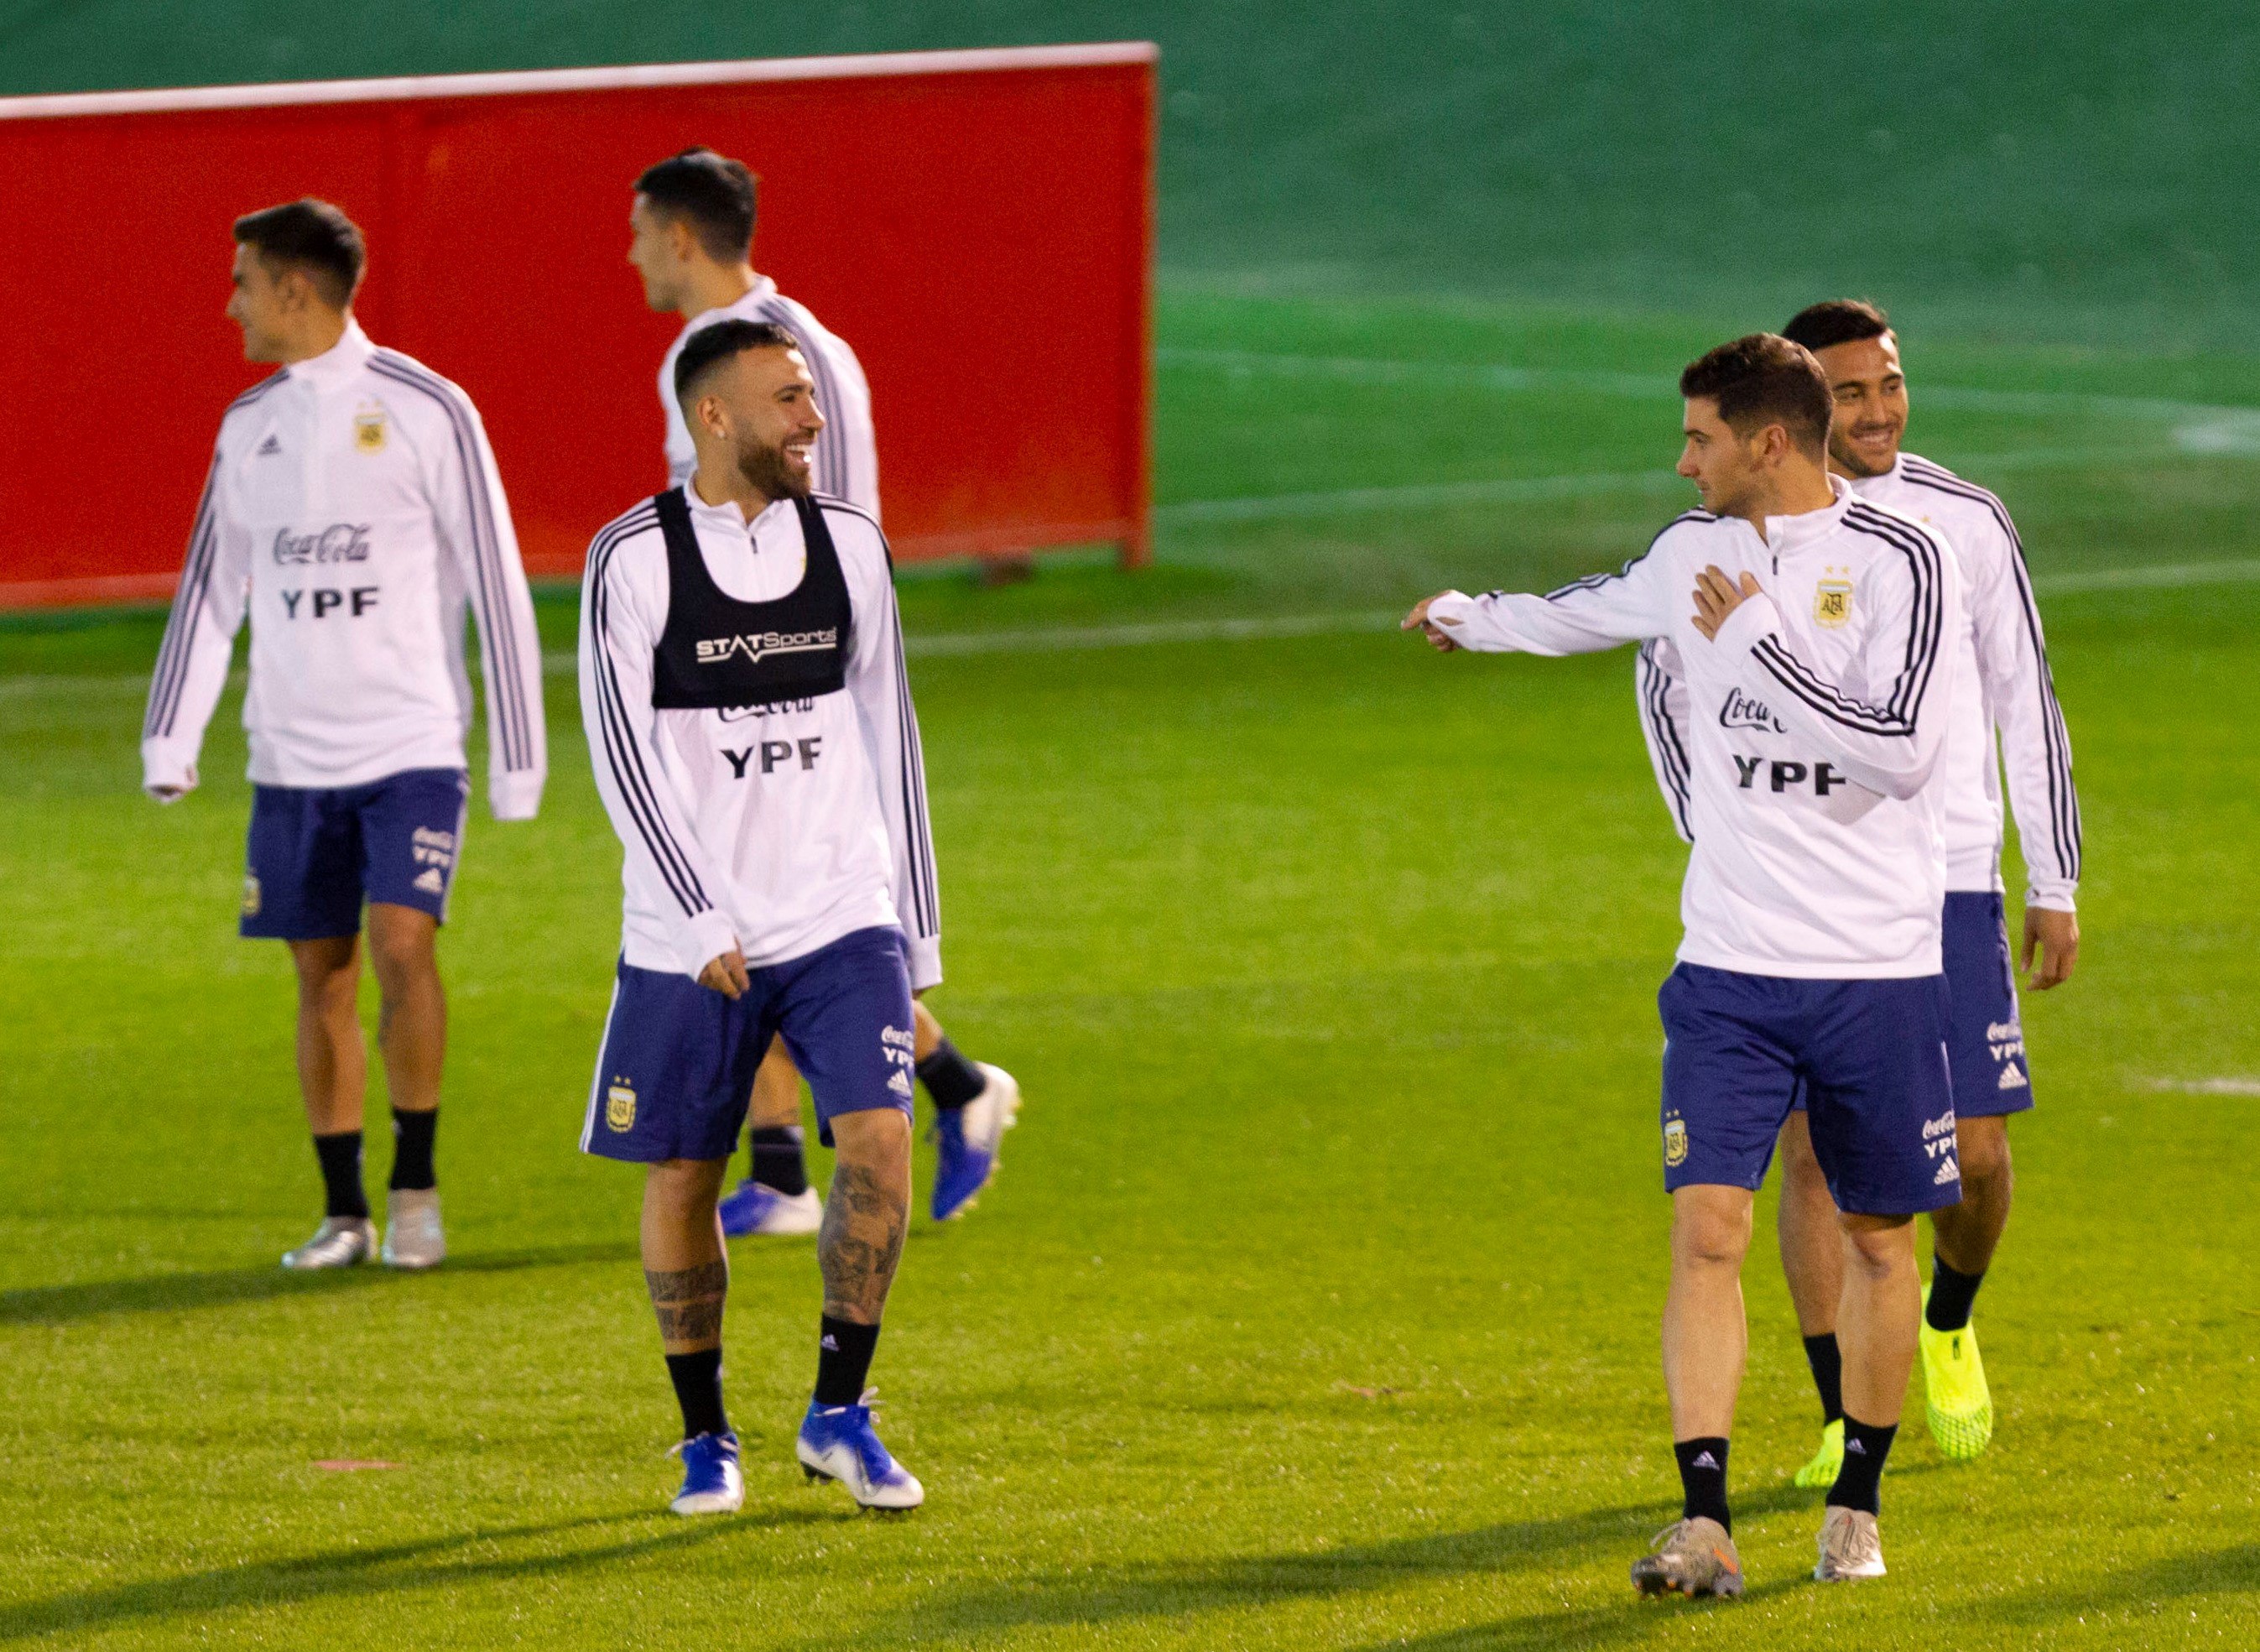 El defensa de la selección argentina Nicolás Otamendi (i) participa en un entrenamiento del equipo en la Ciudad albiceleste. (Foto Prensa Libre: EFE)